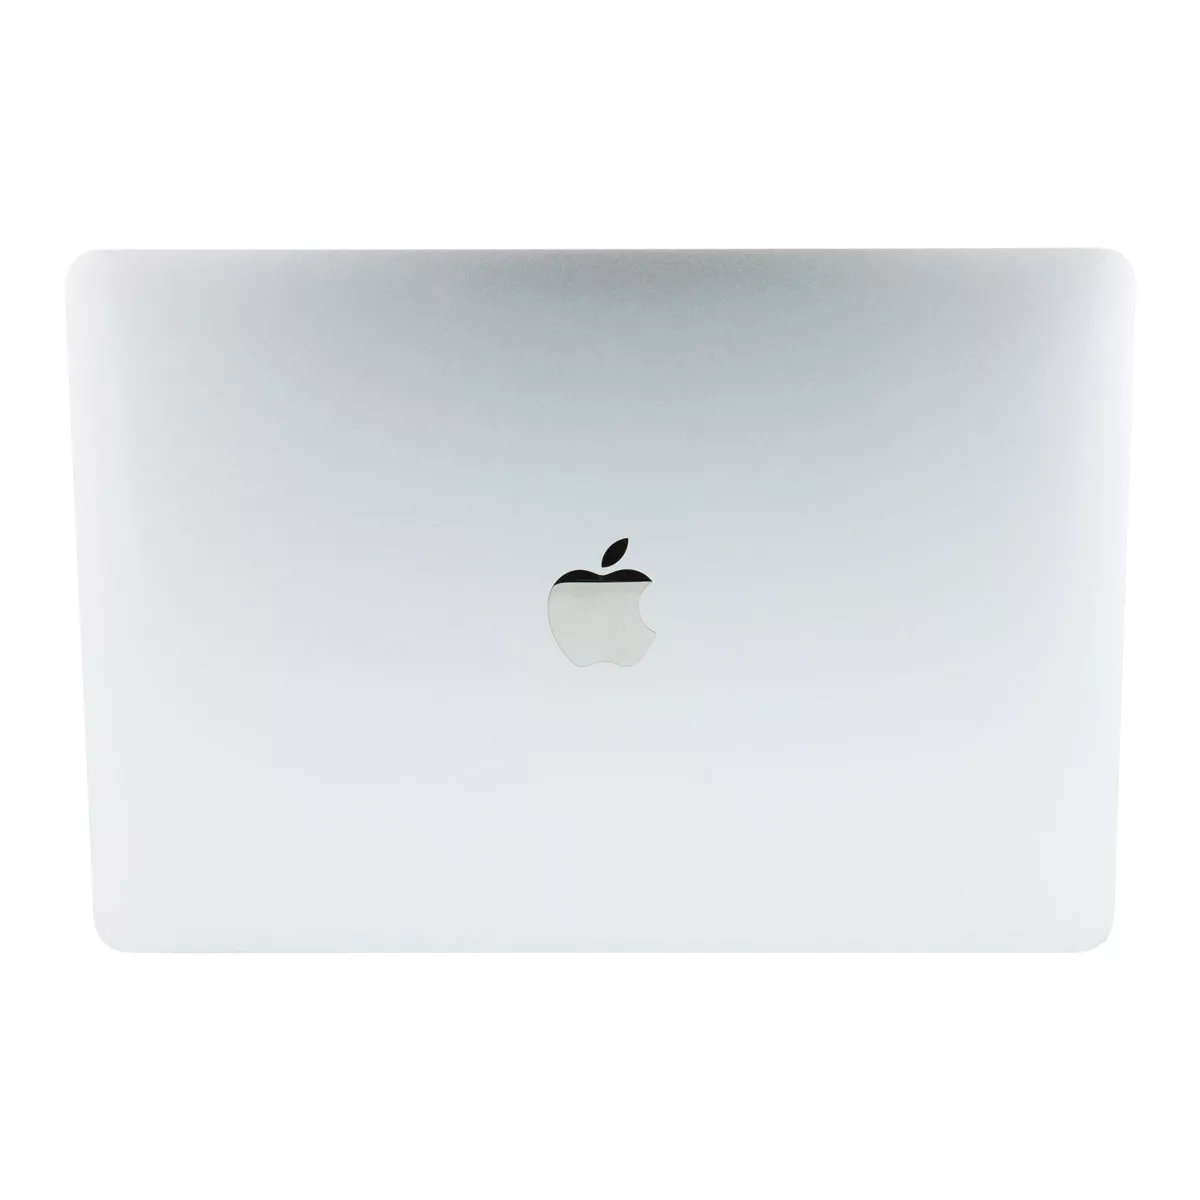 Apple MacBook Pro 13" Mid 2018 Core i5 8259U 16 GB 1 TB SSD Webcam B